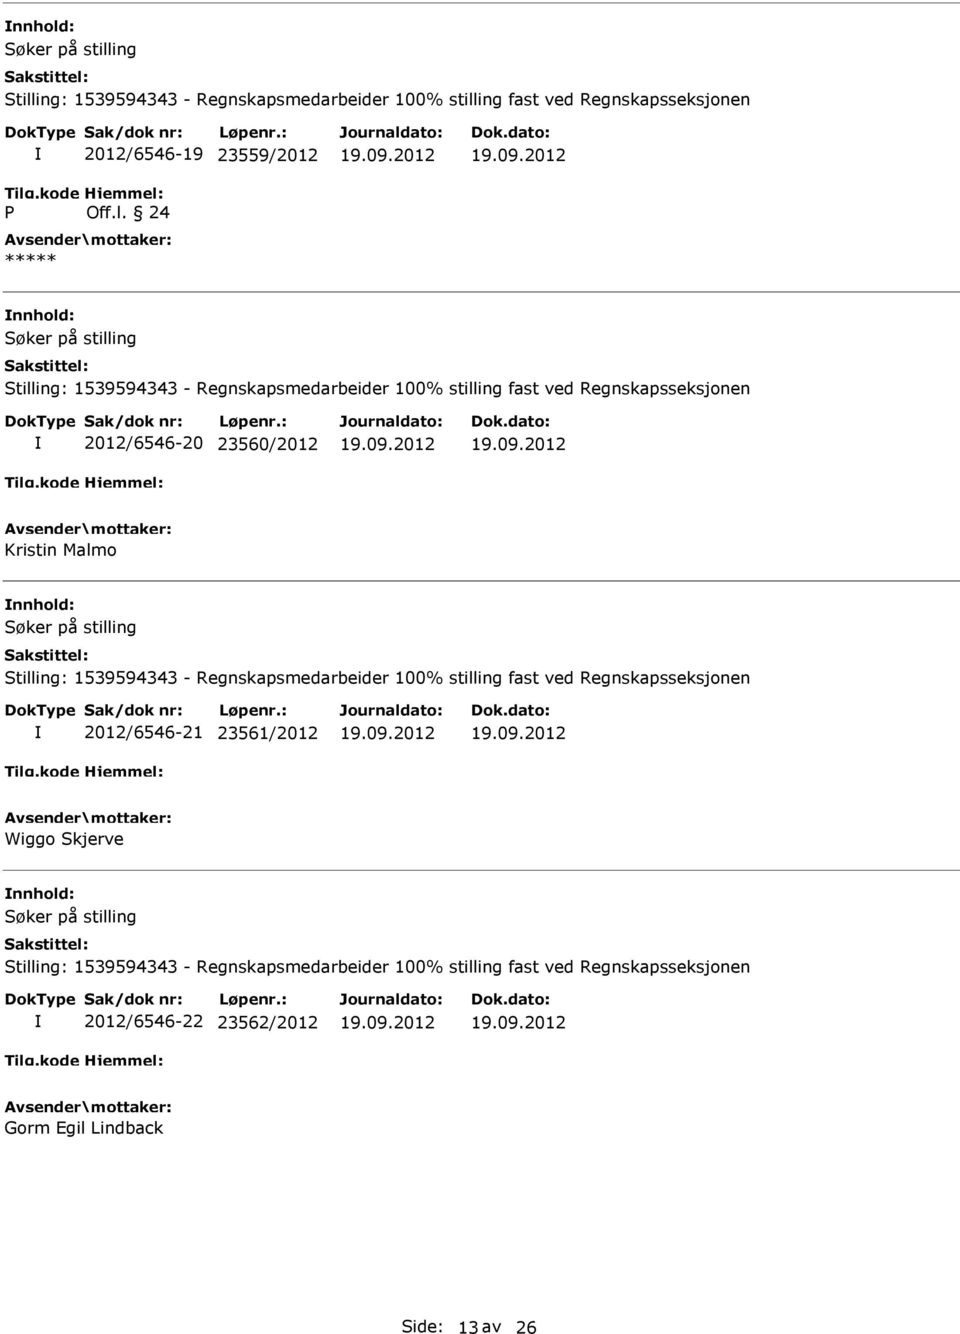 Malmo 2012/6546-21 23561/2012 Wiggo Skjerve